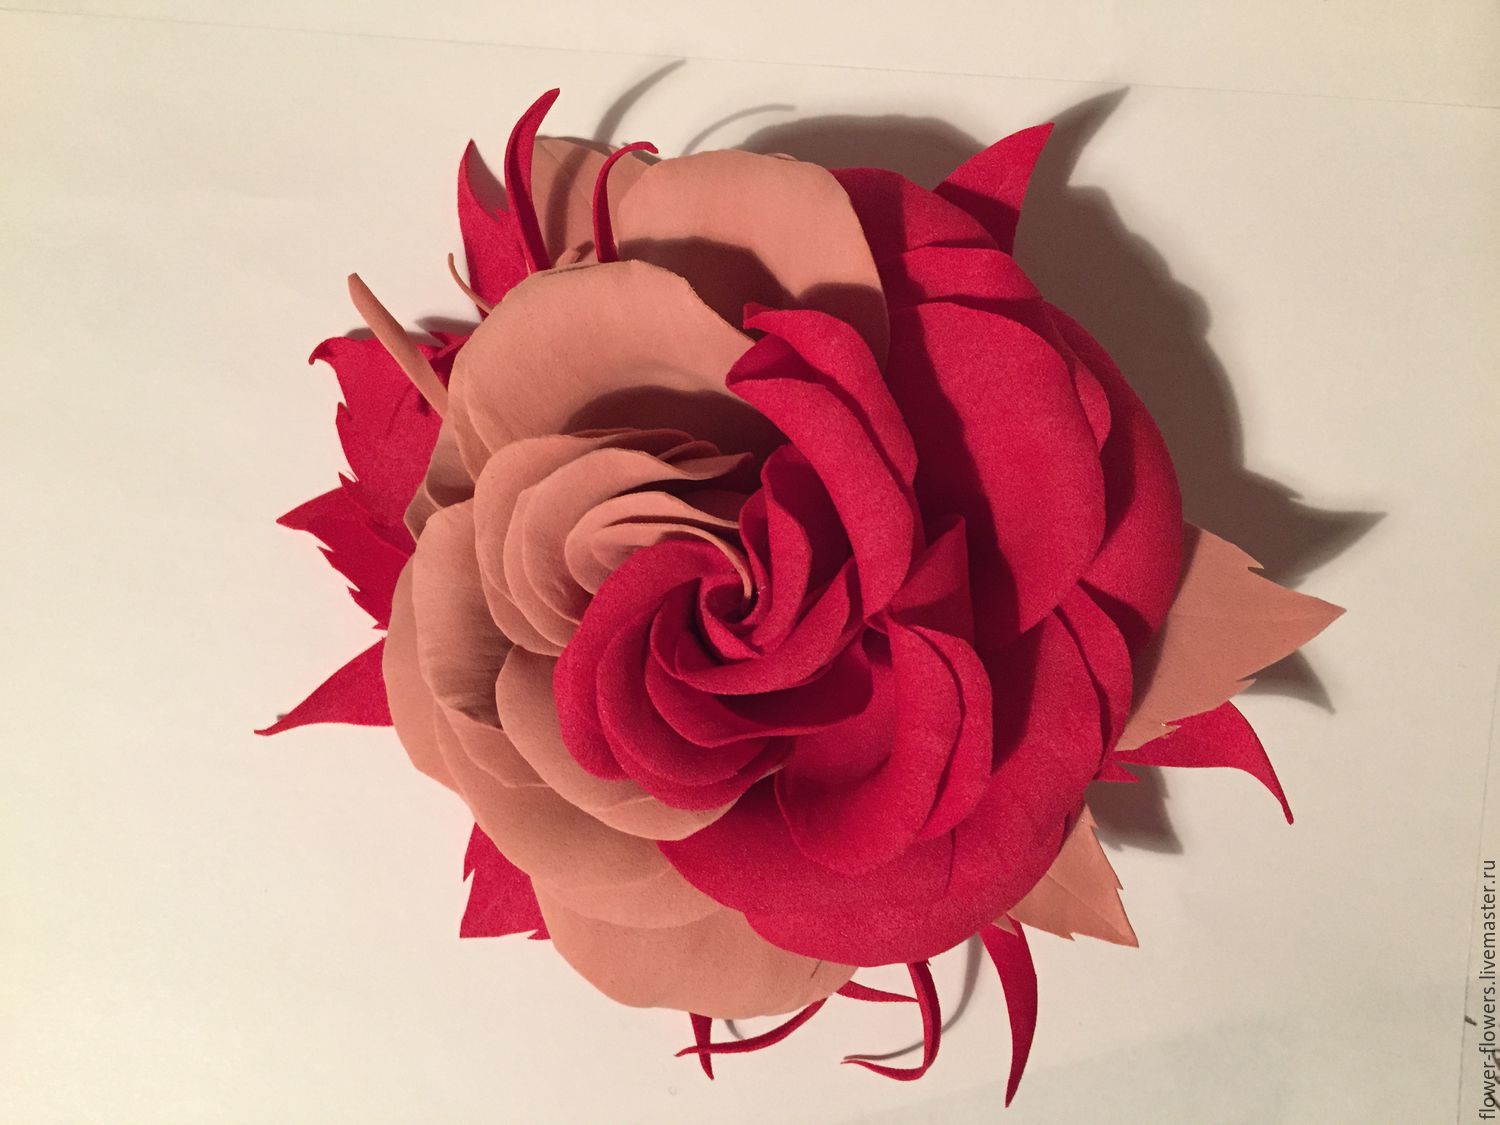 Цветы из замши пластичной: Мастер-класс с U24: как сделать розу из пластичной замши - Истории